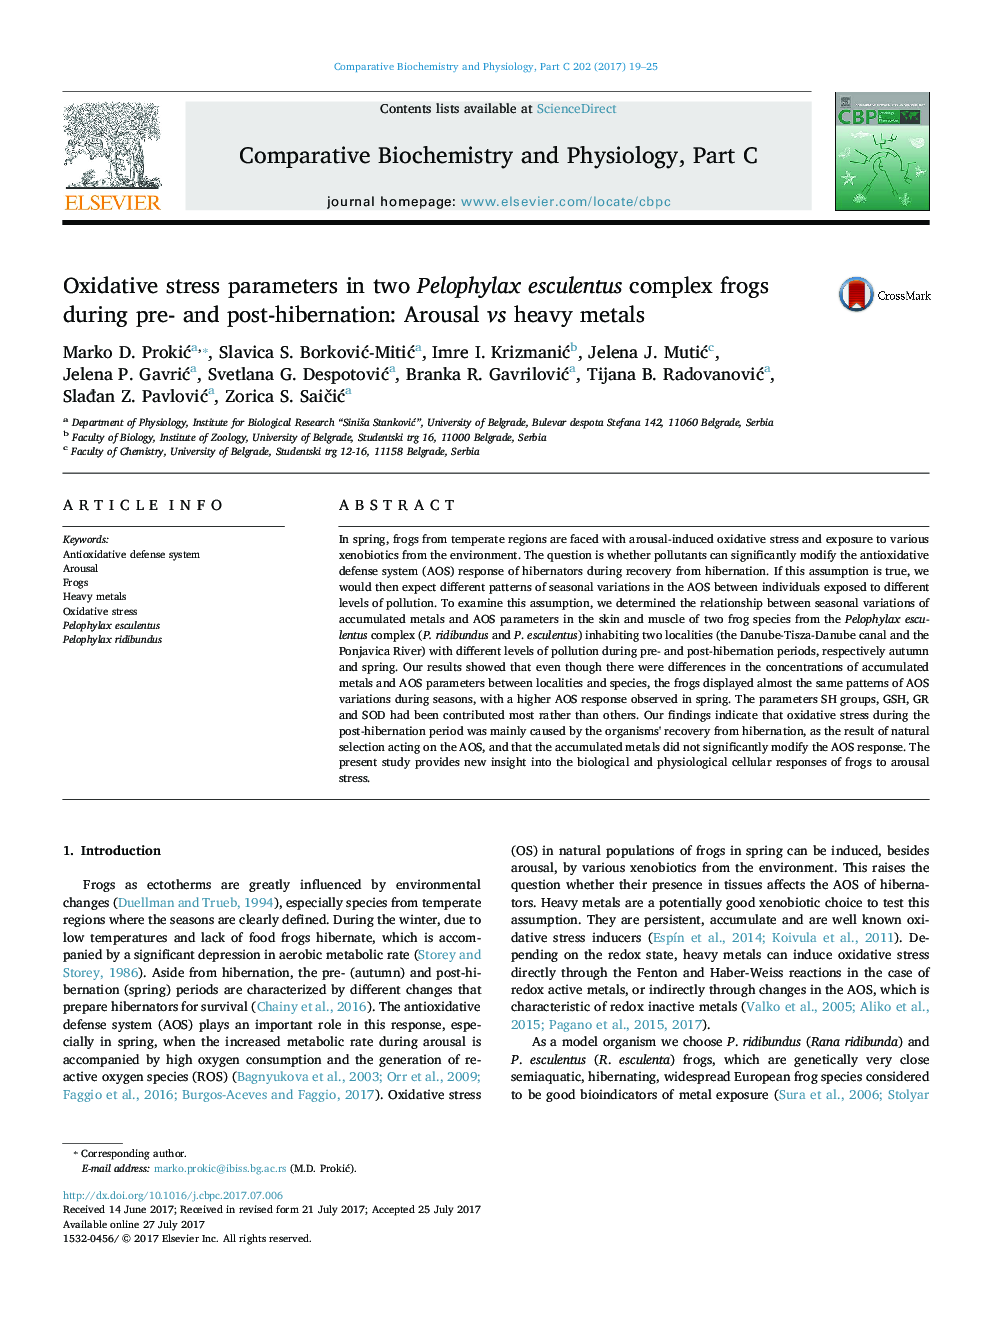 پارامترهای استرس اکسیداتیو در دو قورباغه مجتمع پلاوفیلا اسکلنتیوس در طی پیش و پس از خواب زمستانی: تحریک در برابر فلزات سنگین 